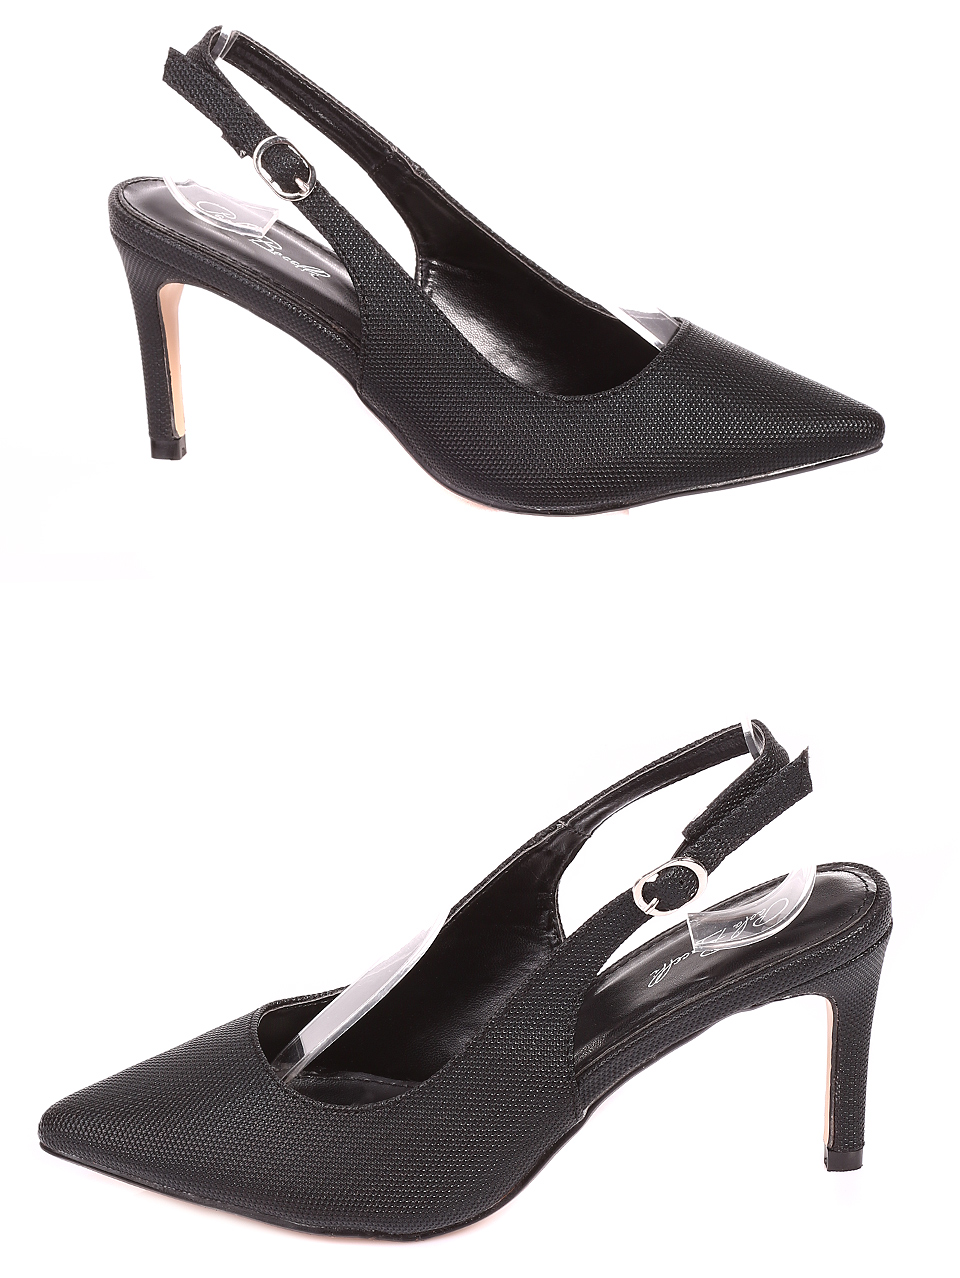 Елегантни дамски обувки на ток в черно 3M-20243 black